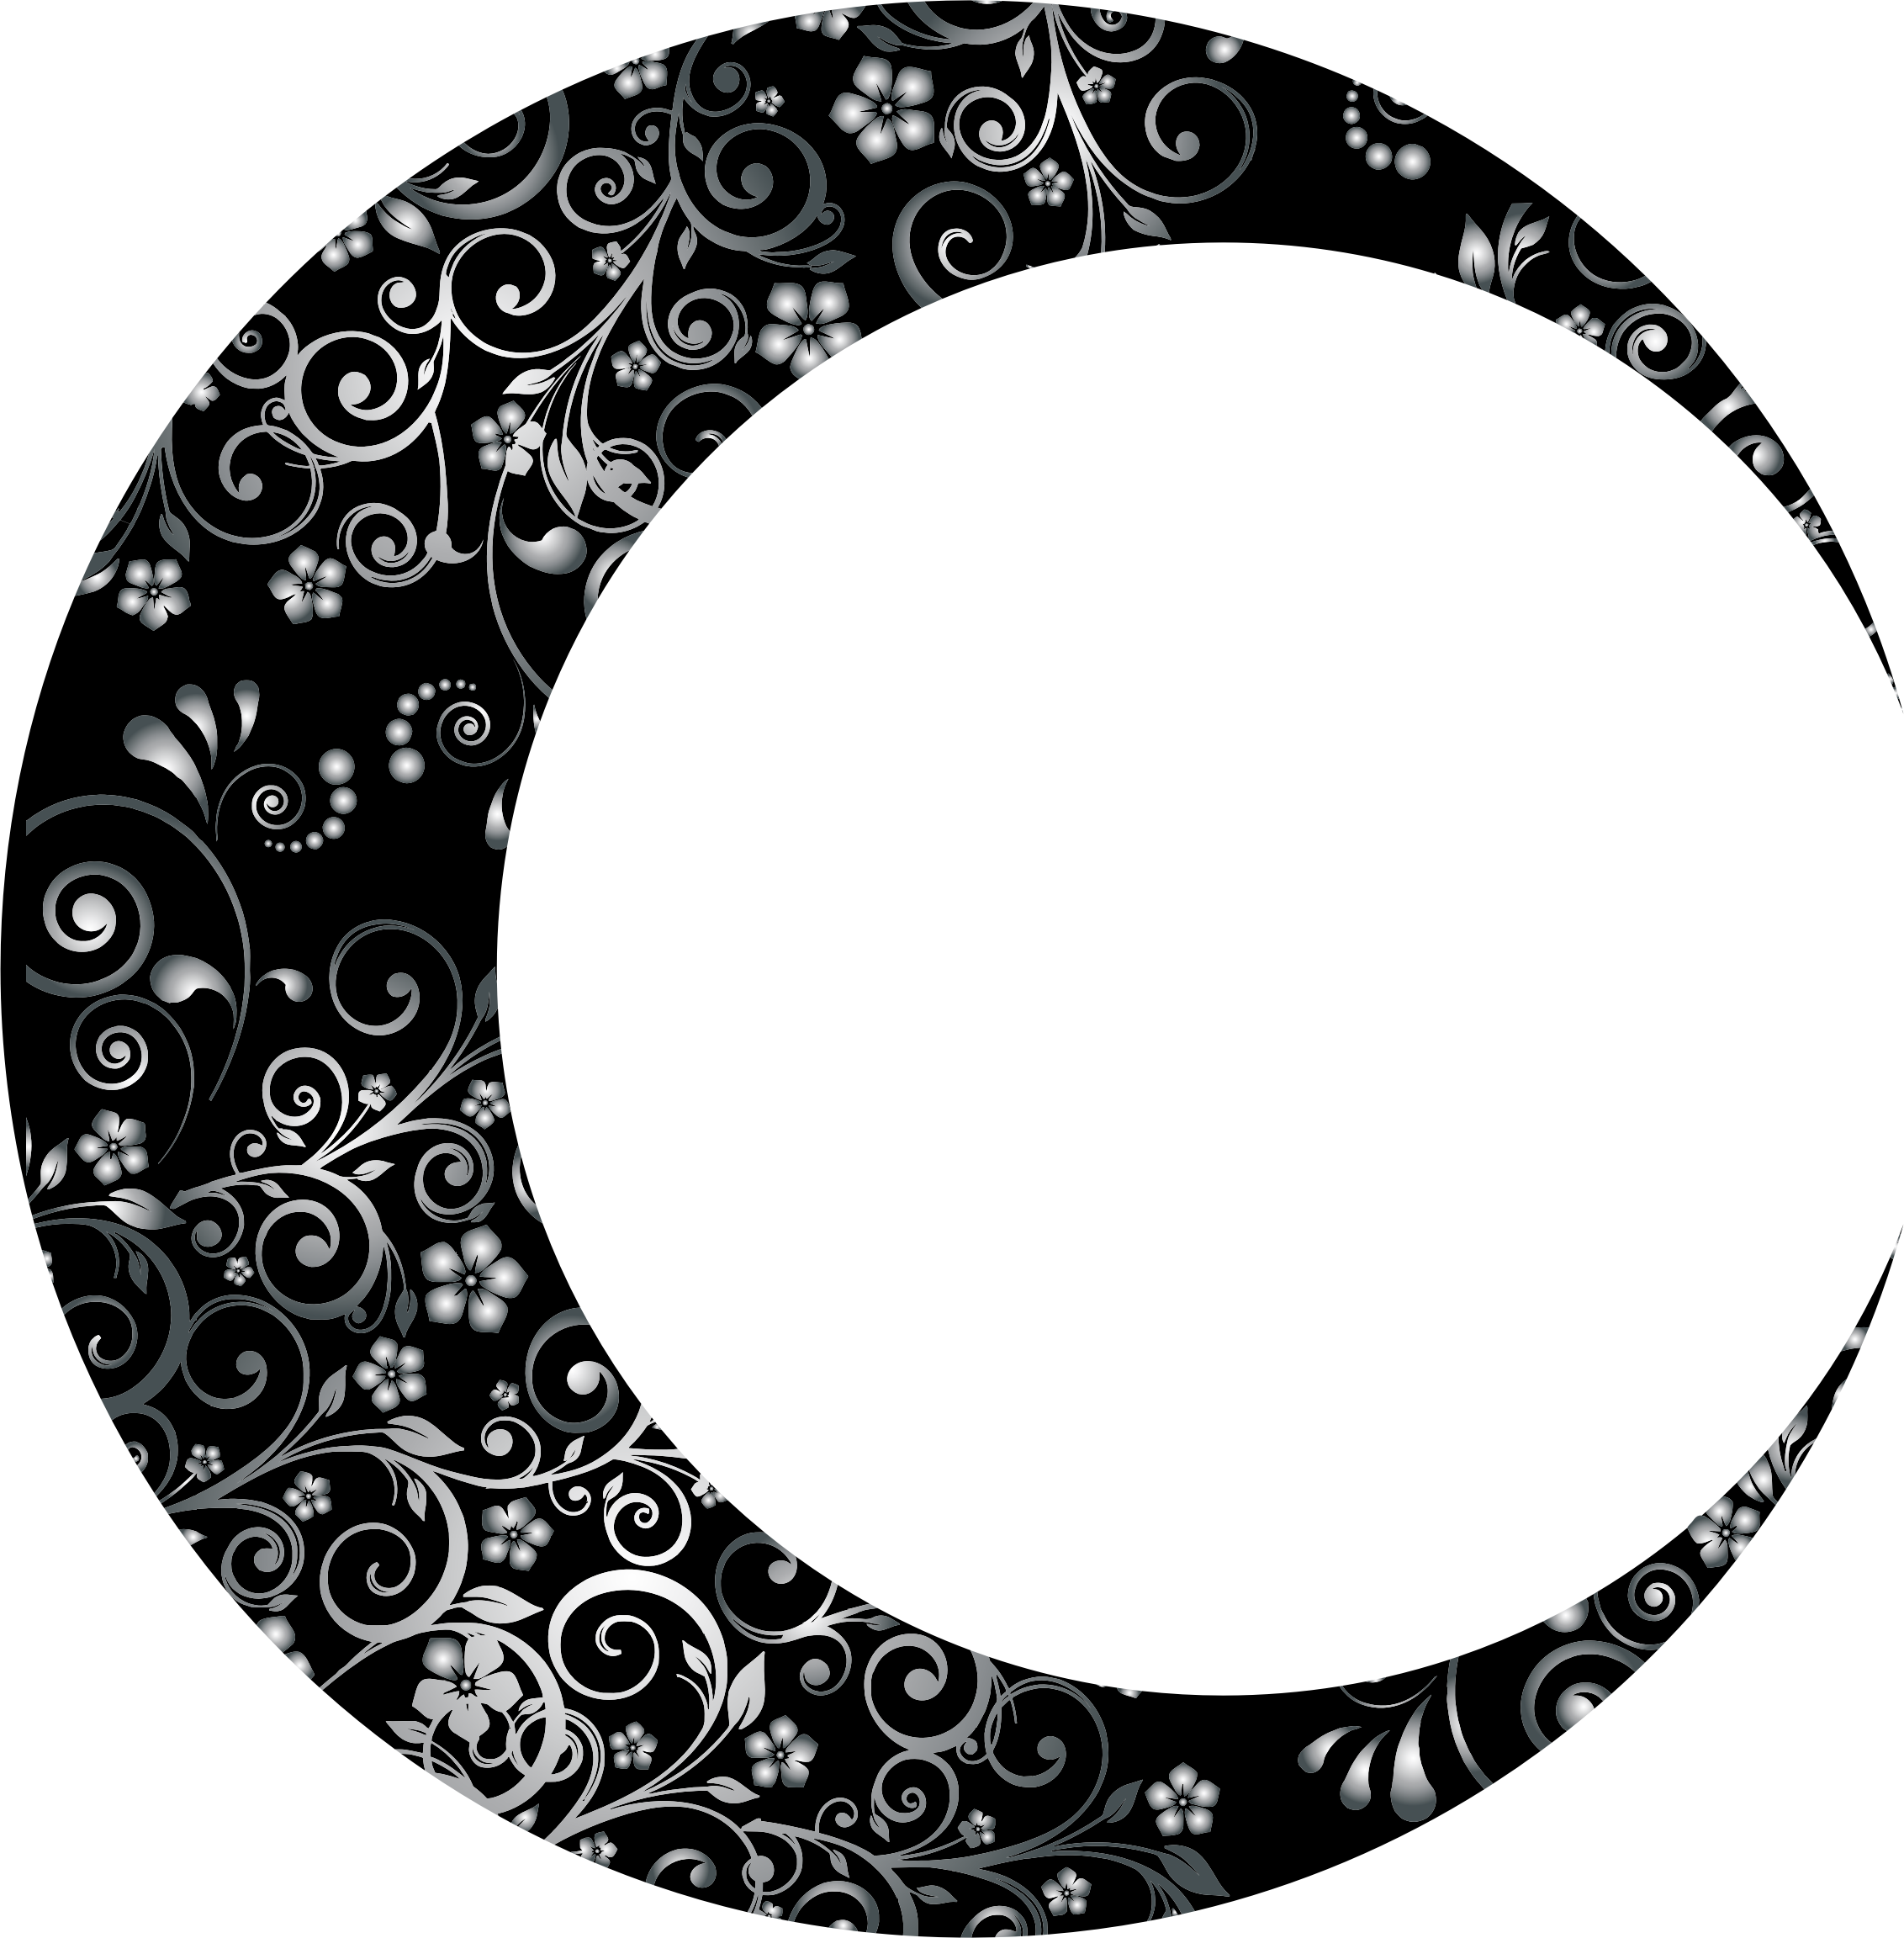 Prismatic floral crescent mark. Clipart moon vector